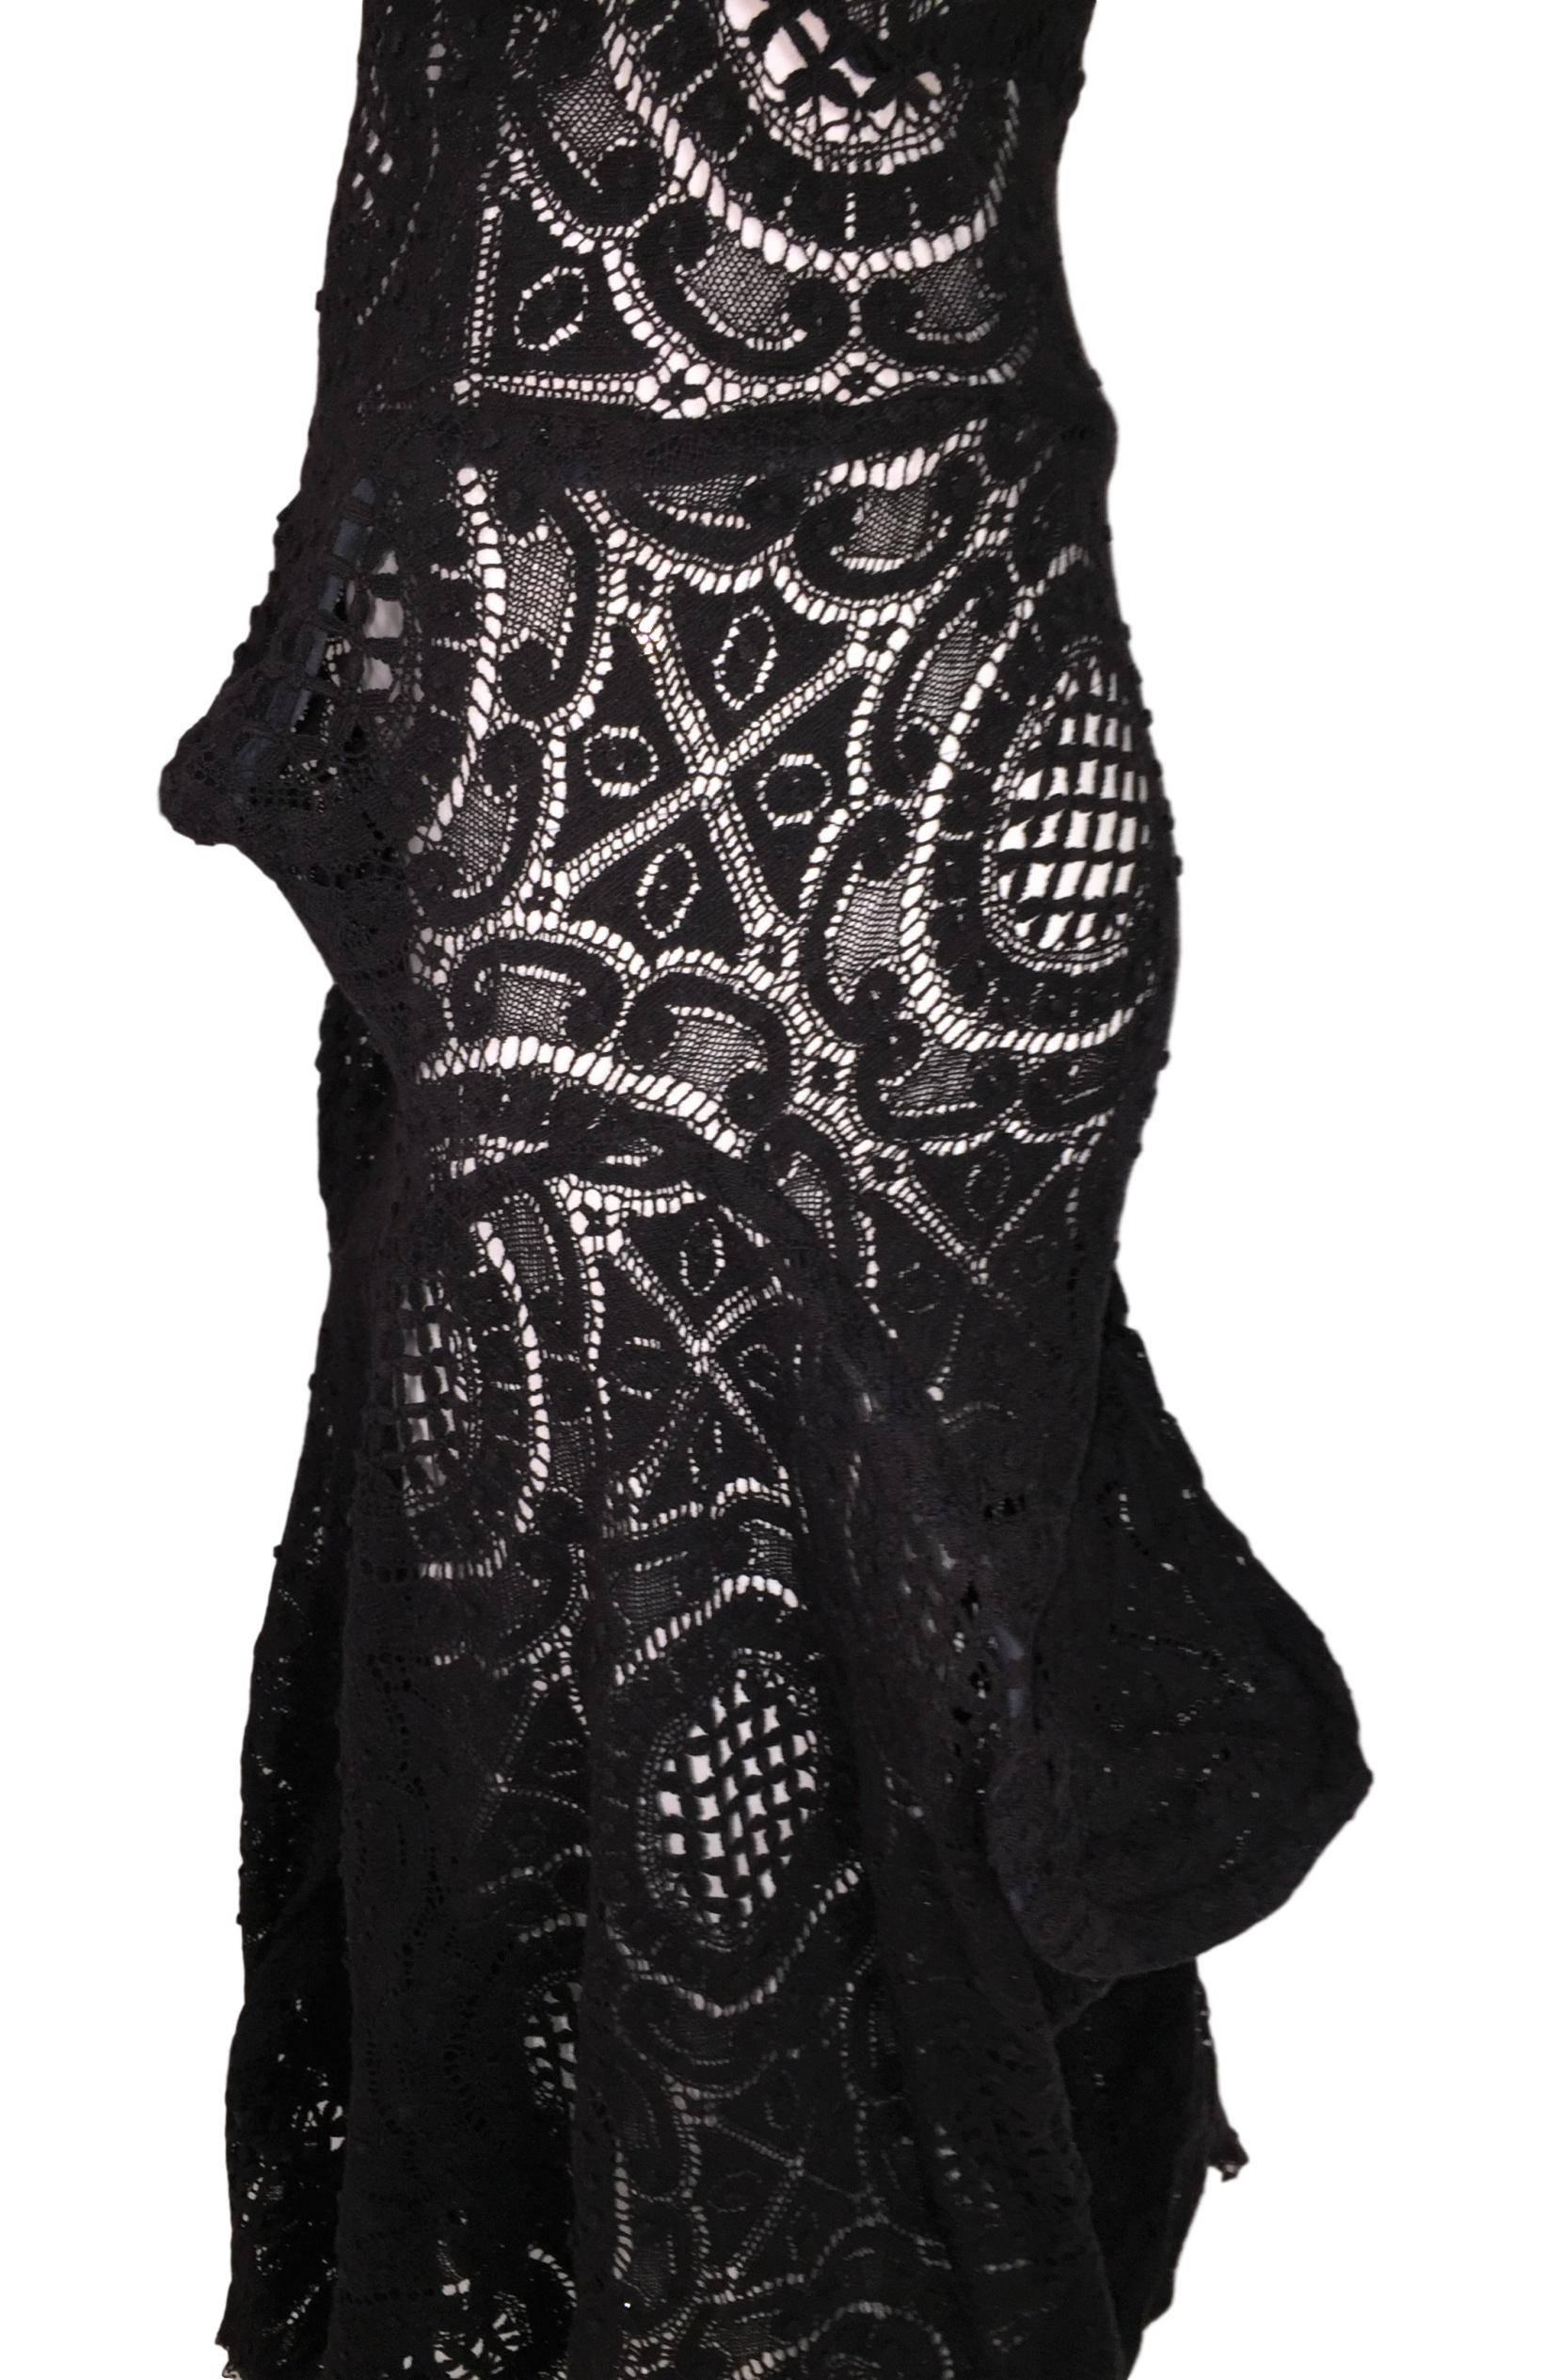 S/S 2002 Vivienne Westwood Couture OOAK Sheer Black Avant Garde Dress 1